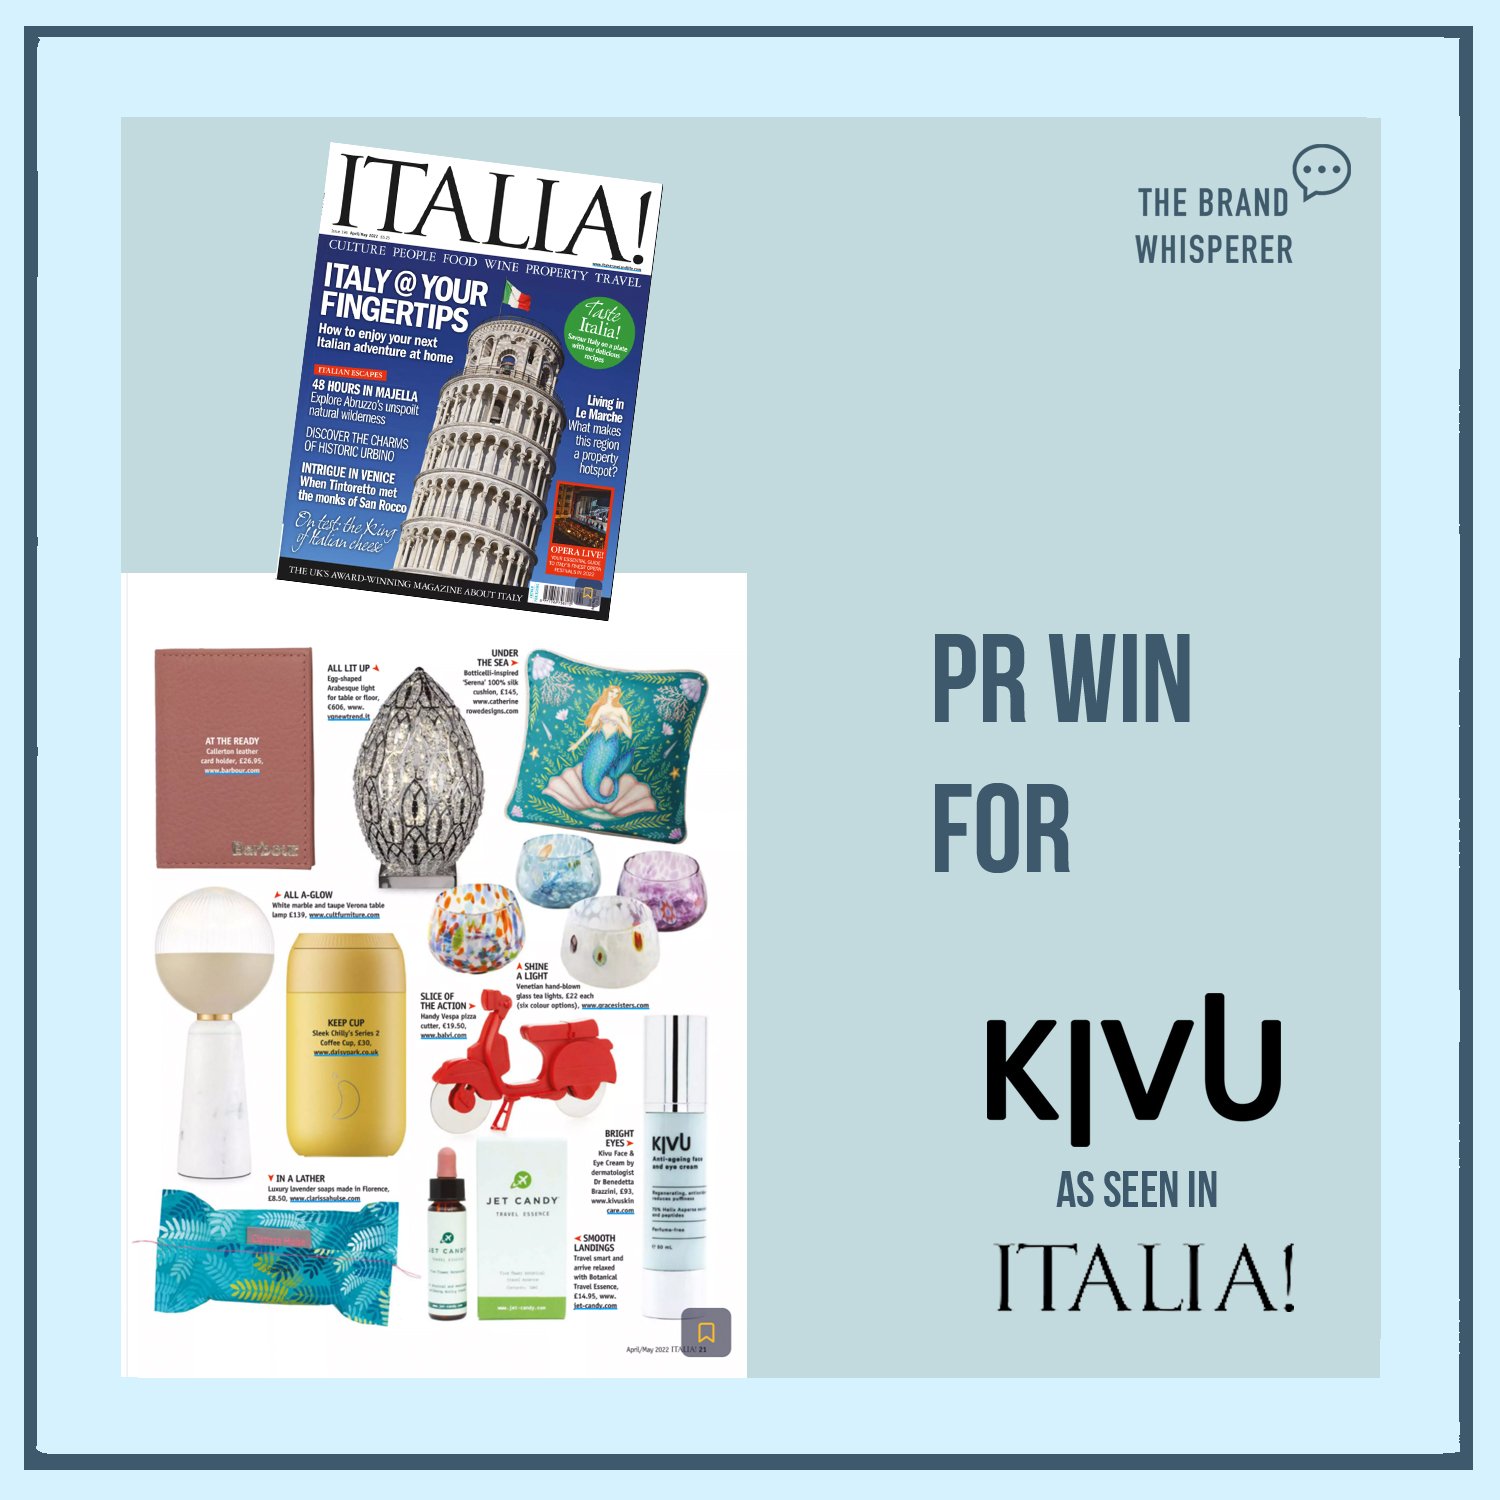 Kivu Skincare in ITALIA! Magazine, March 2022